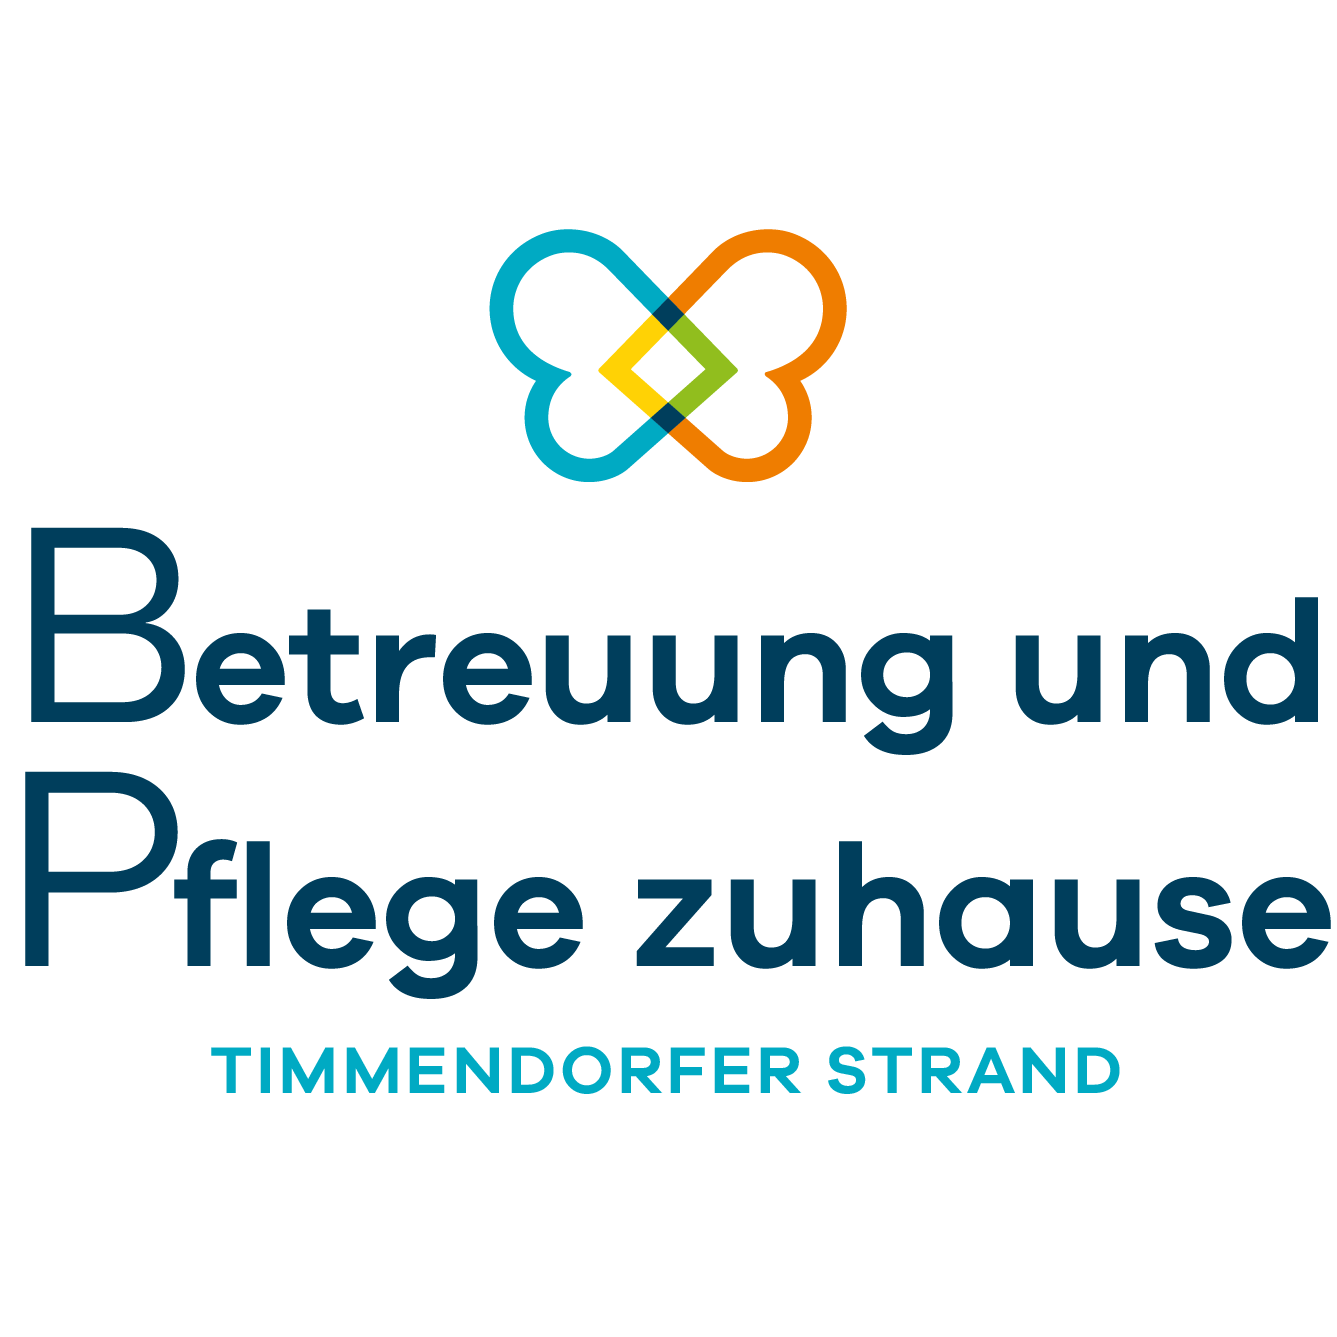 Betreuung und Pflege zuhause Timmendorfer Strand in Timmendorfer Strand - Logo